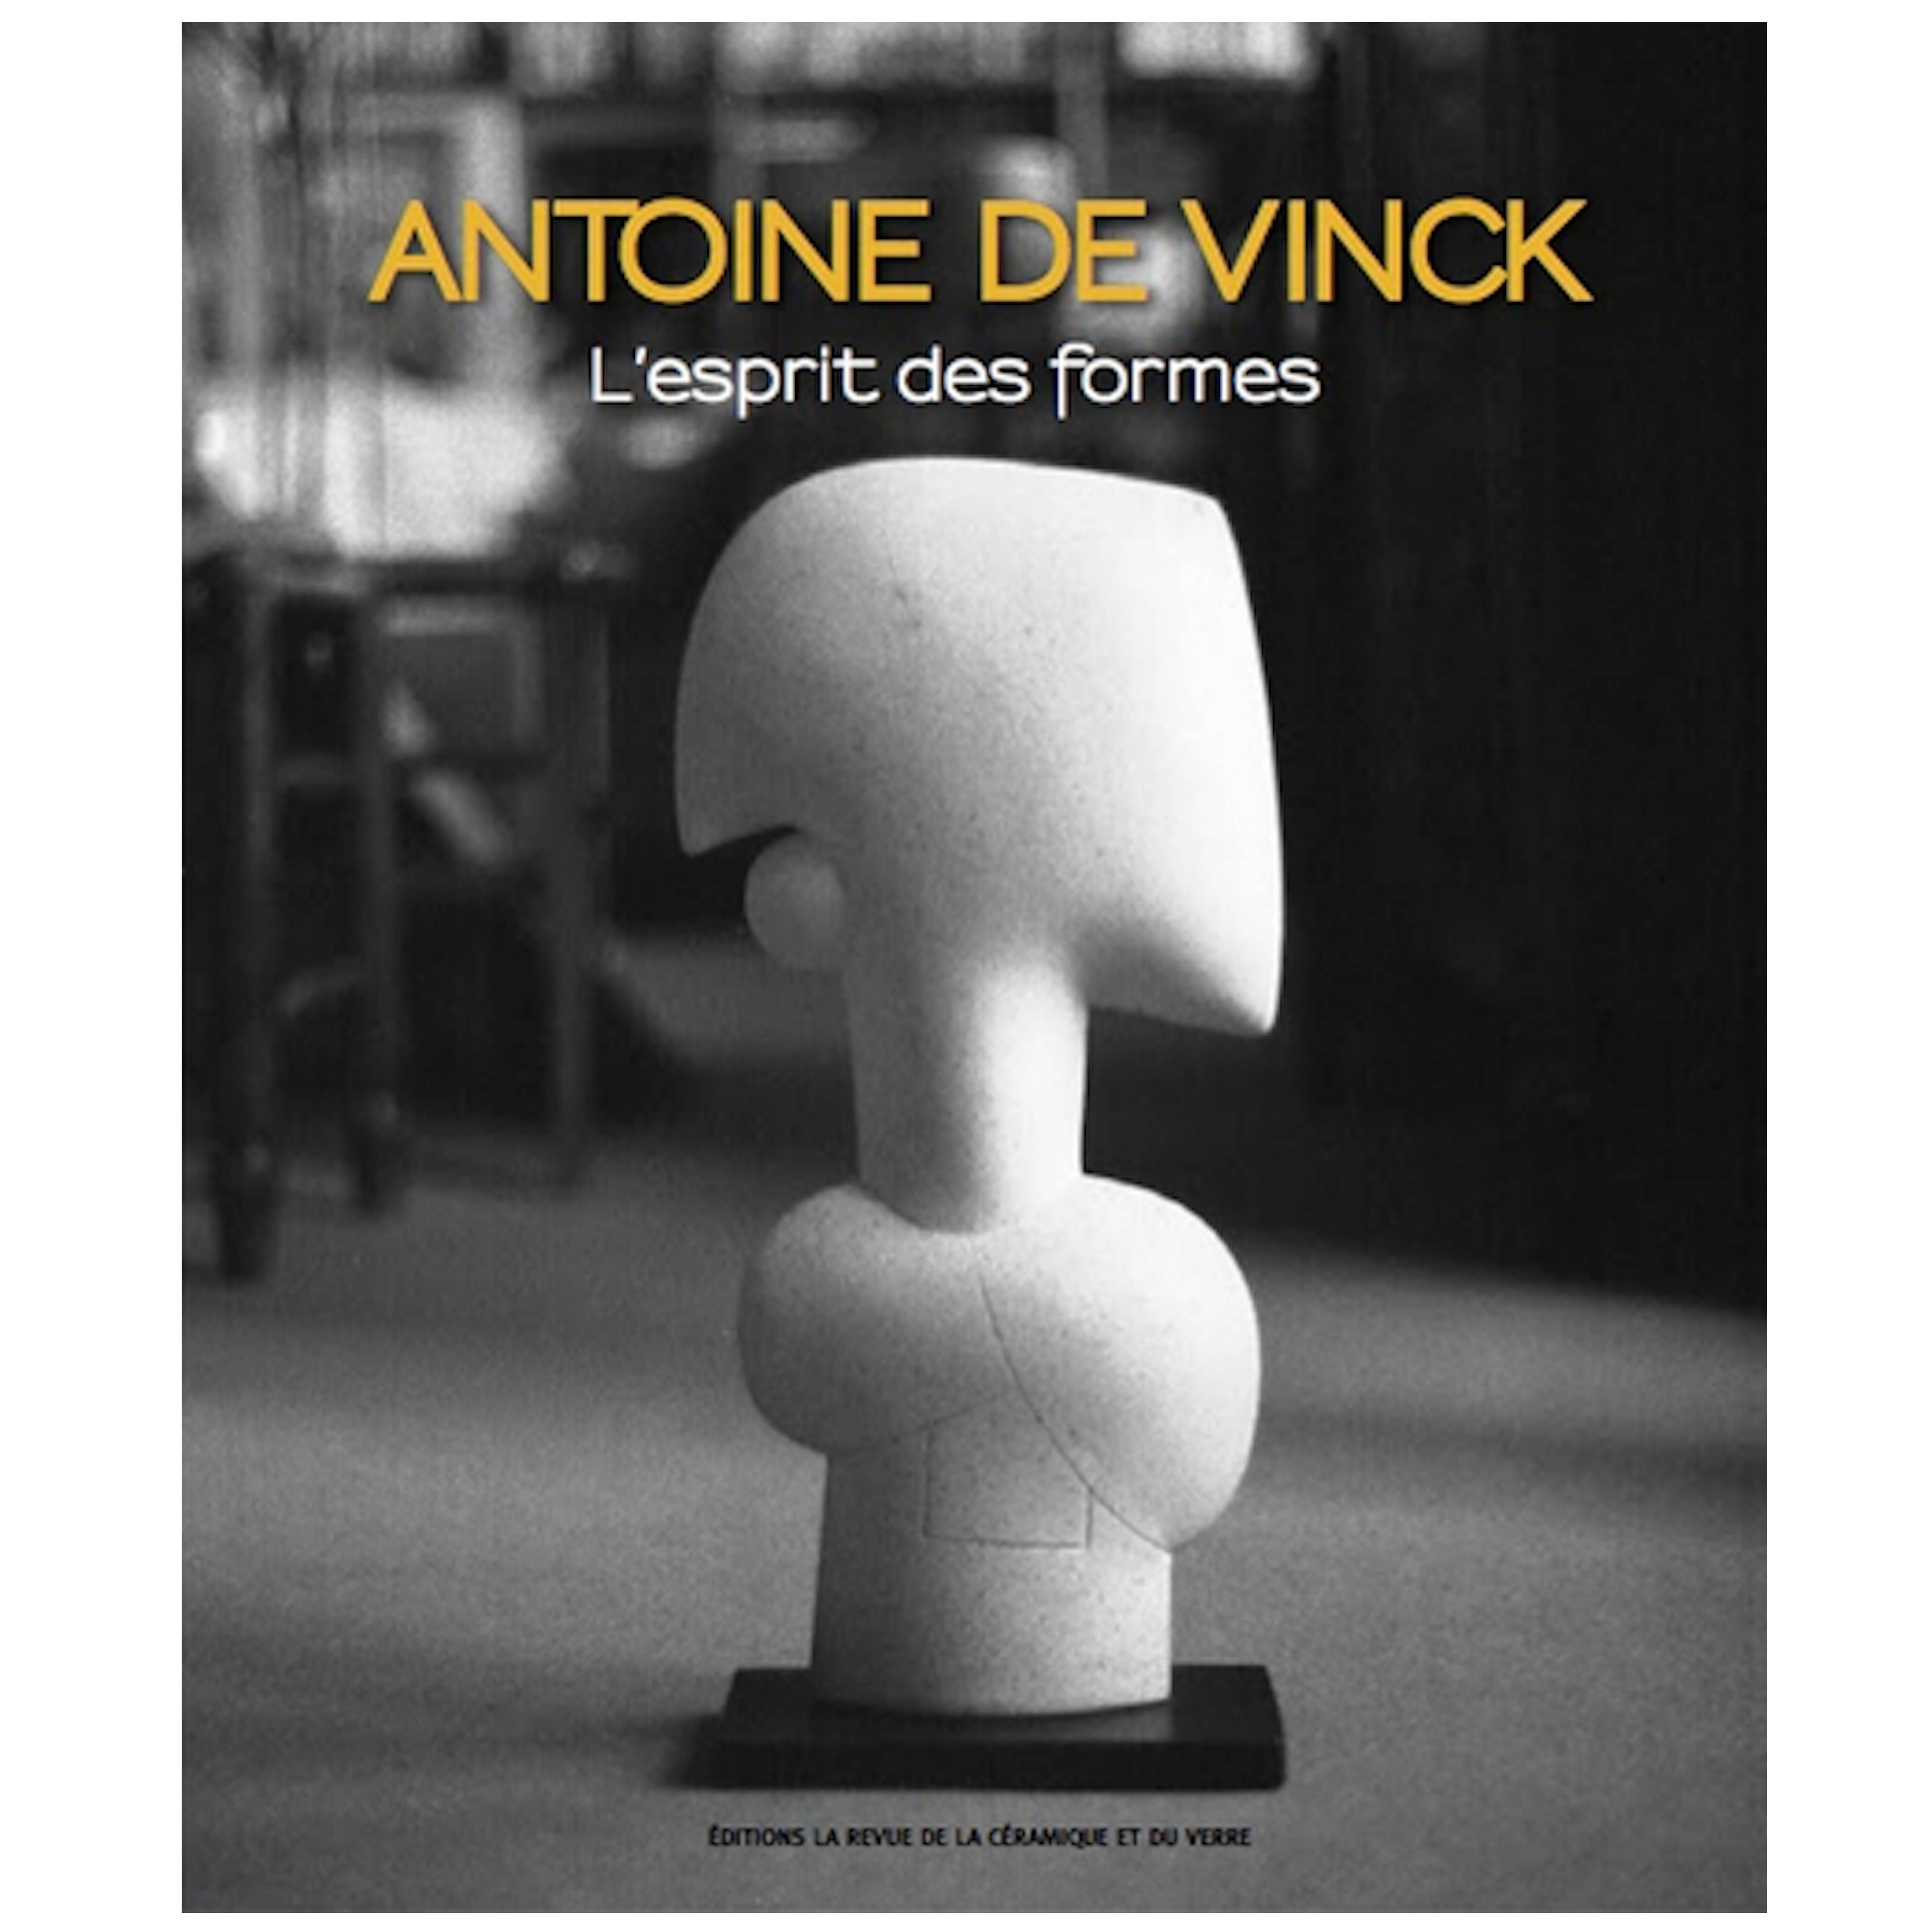 Monograph on the Work of Antoine de Vinck, Revue de la Céramique et du Verre